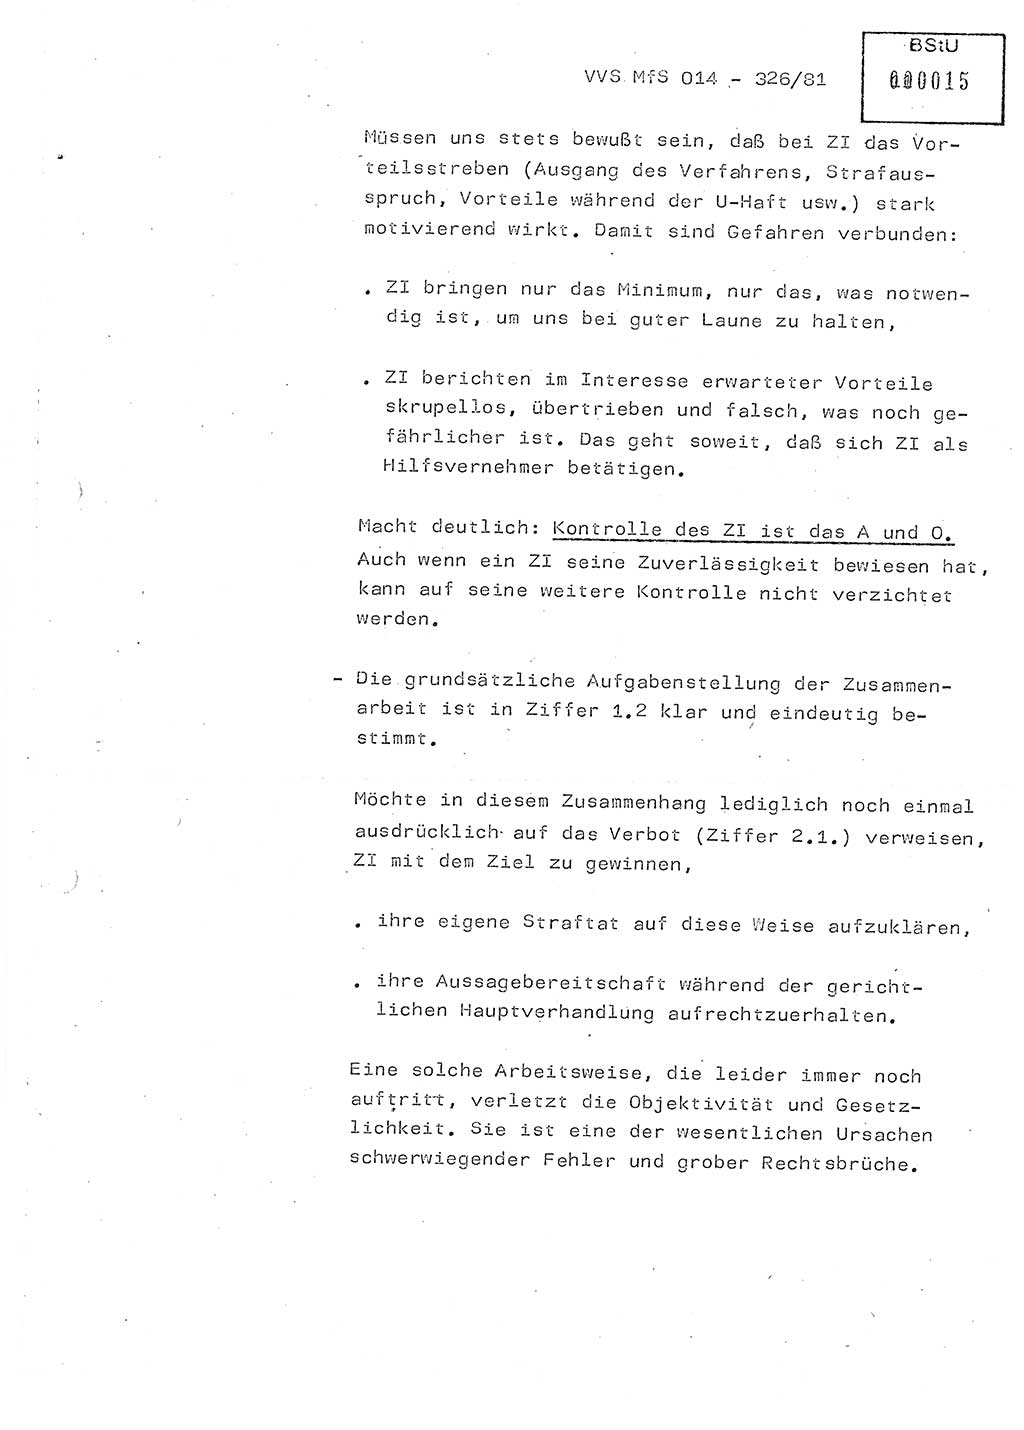 Thesen zum Einführungsvortrag für die Schulung zur Richtlinie Nr. 2/81 [zur Arbeit mit Zelleninformatoren (ZI)] des Genossen Minister (Generaloberst Erich Mielke), Ministerium für Staatssicherheit (MfS) [Deutsche Demokratische Republik (DDR)], Hauptabteilung (HA) Ⅸ, Vertrauliche Verschlußsache (VVS) 014-326/81, Berlin 1981, Seite 11 (Th. Sch. RL 2/81 MfS DDR HA Ⅸ VVS 014-326/81 1981, S. 11)